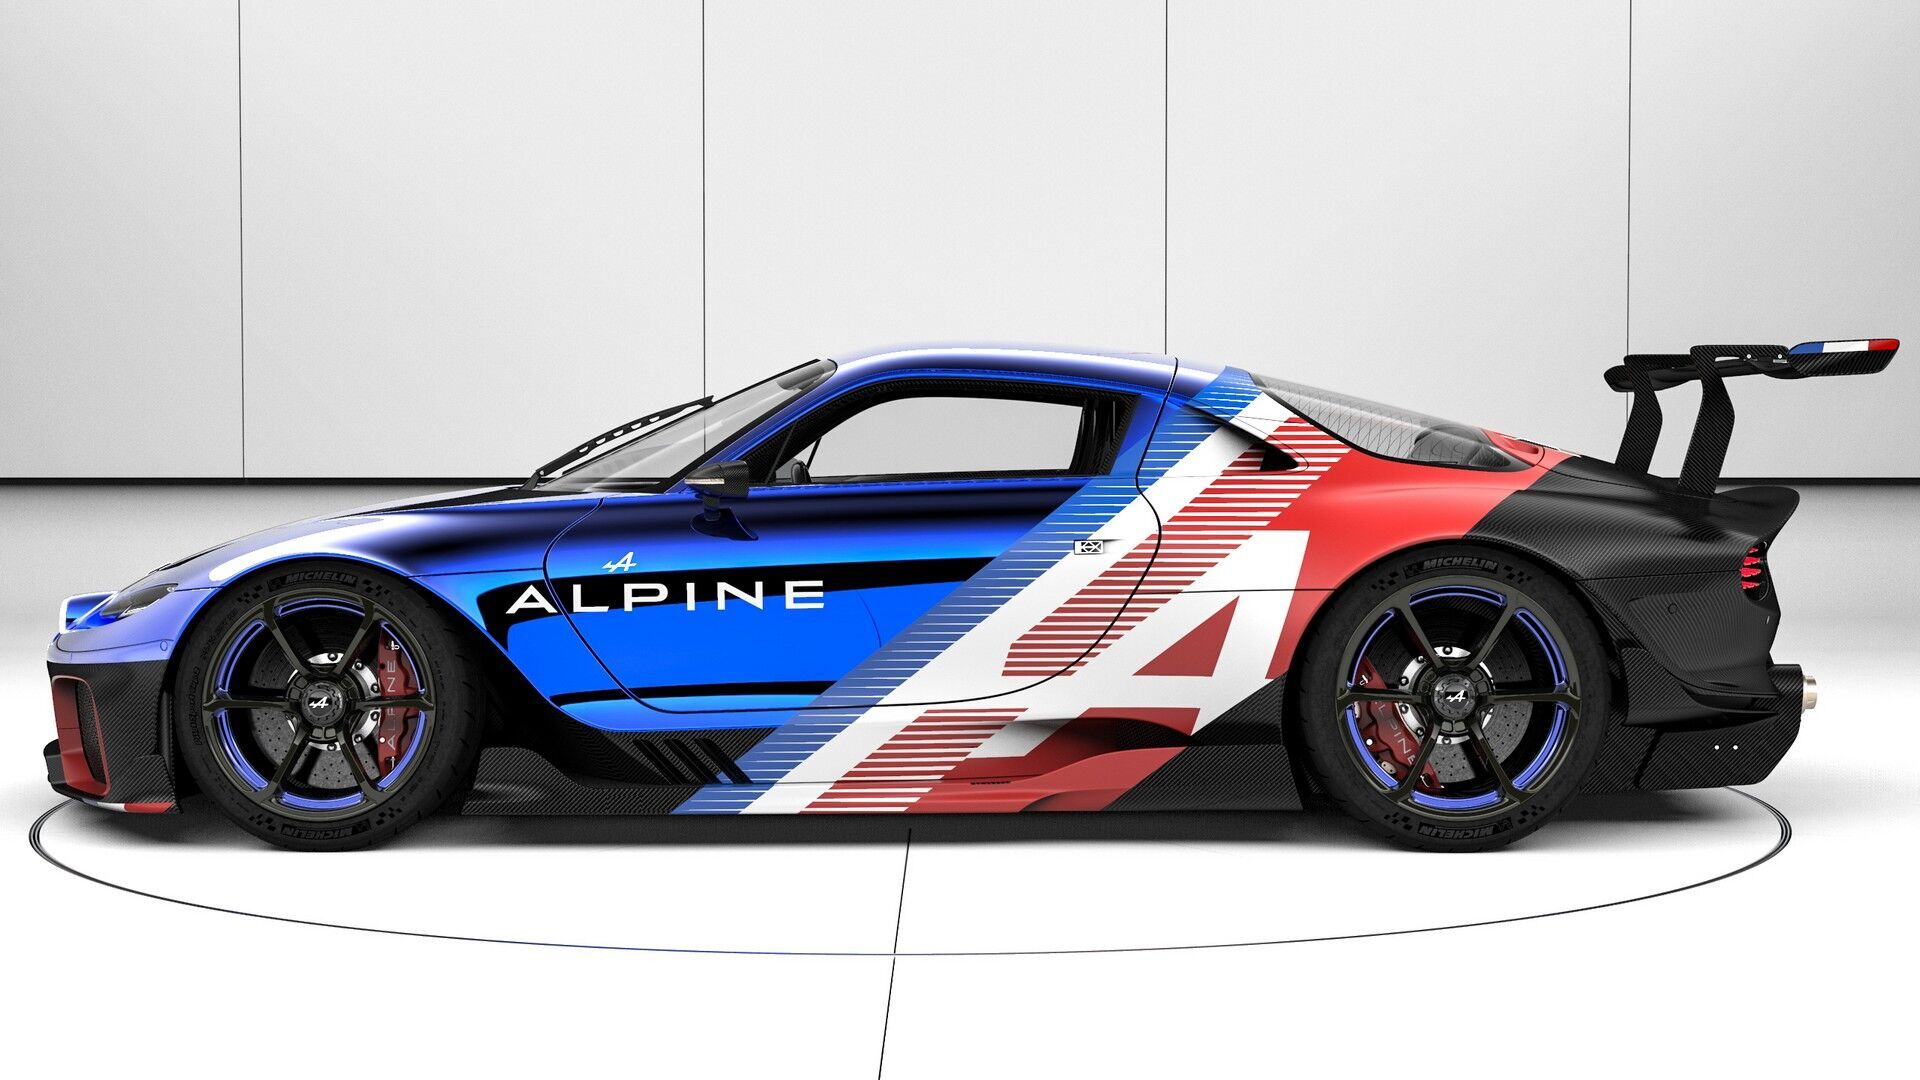 Перше купе оформлене у стилістиці боліда Alpine A521 заводської команди Alpine F1 Team у Формулі-1